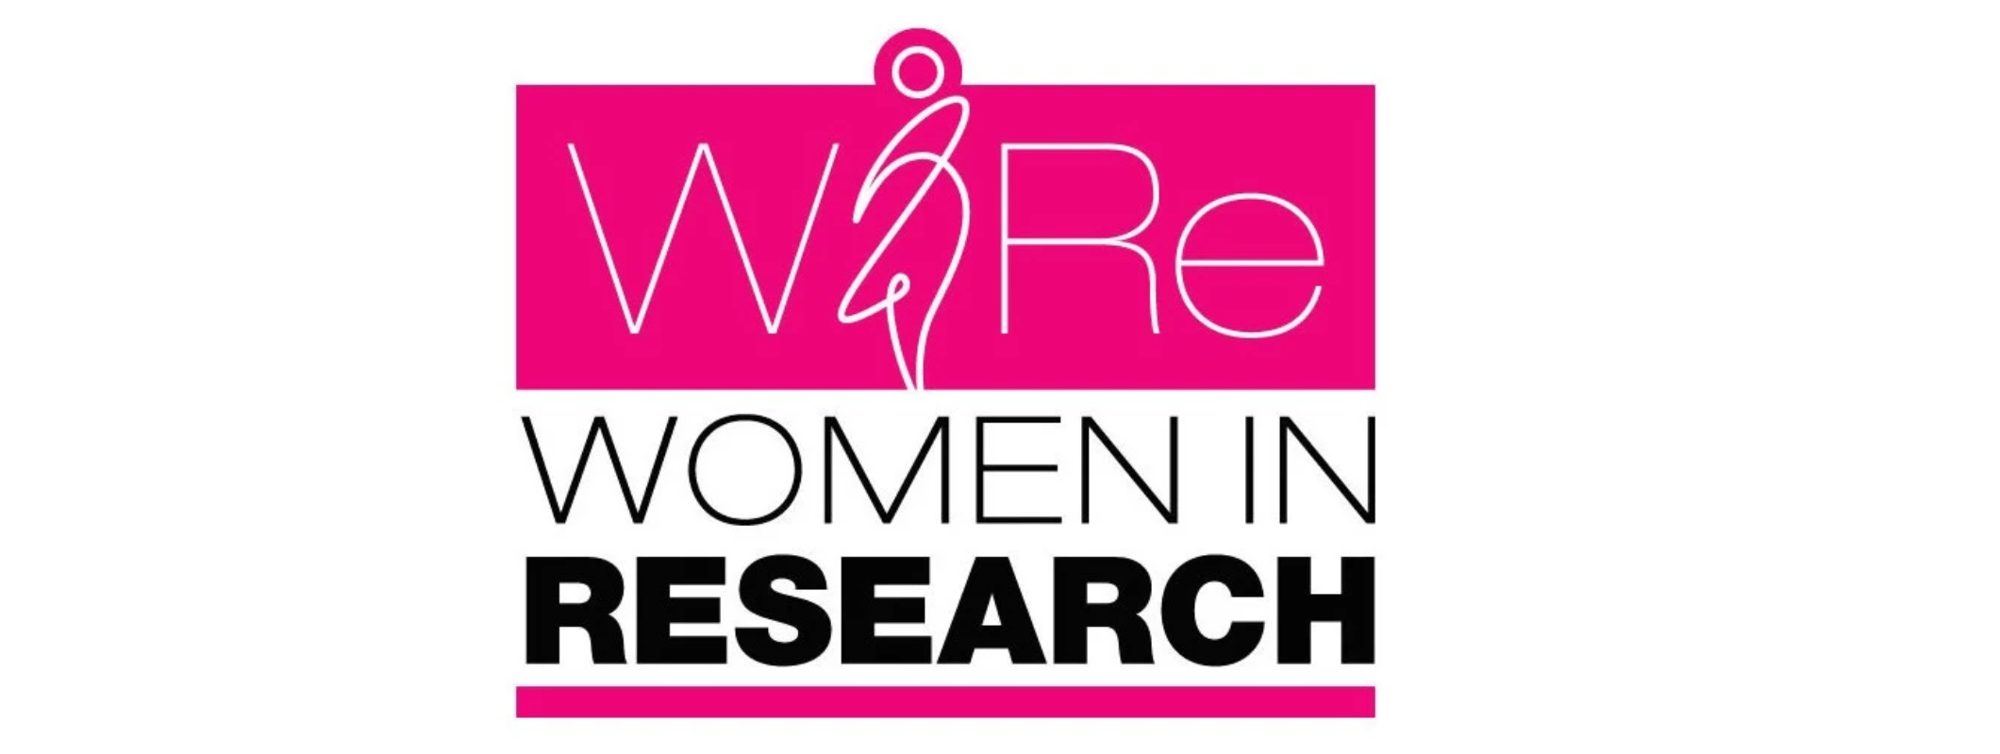 Women in Research-1